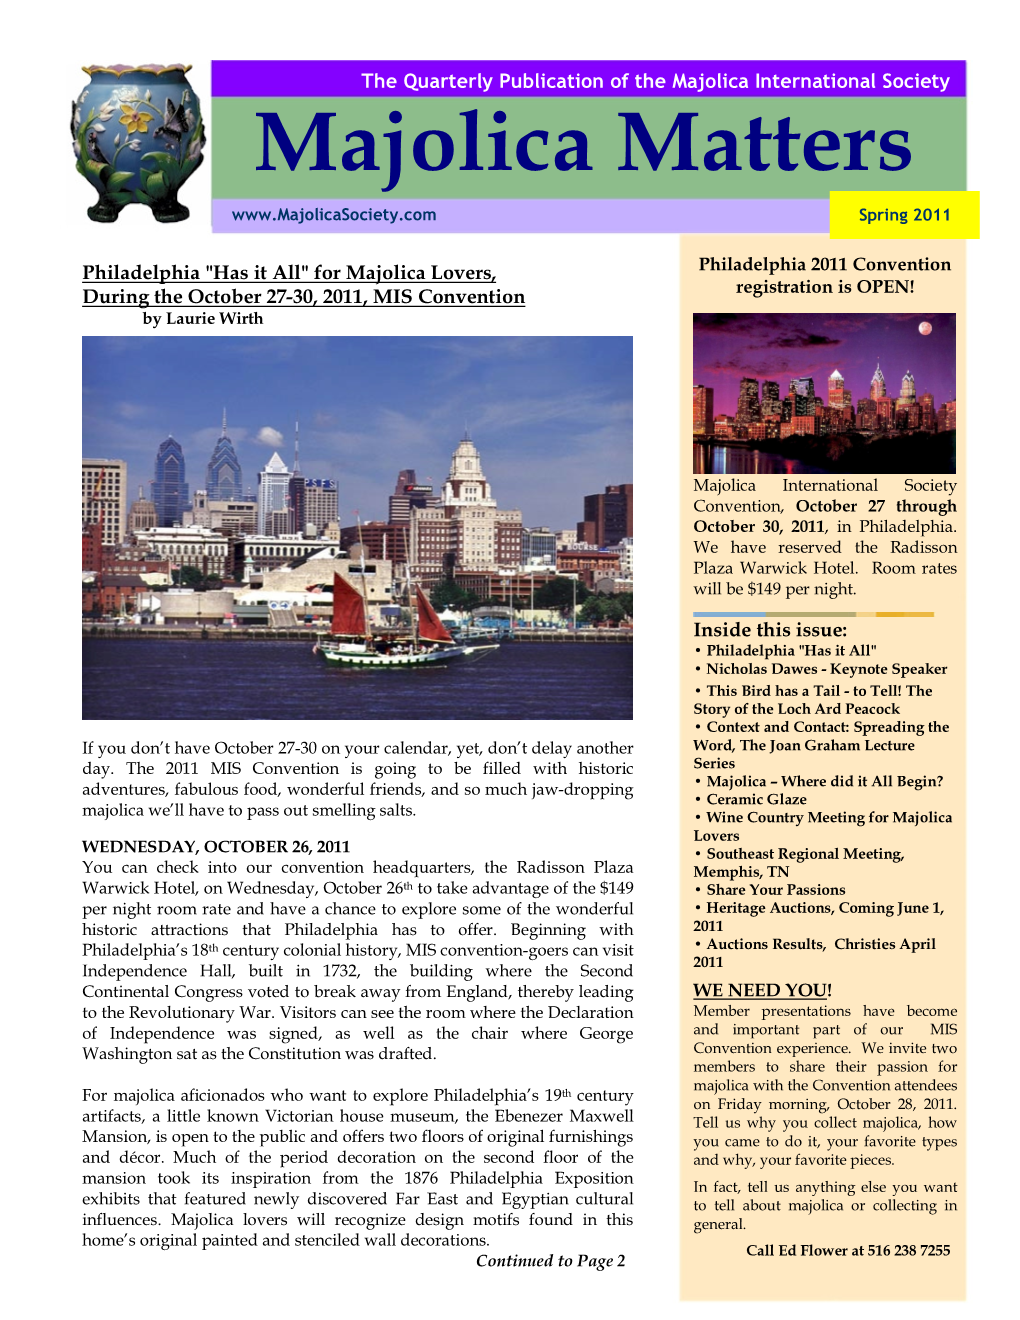 Majolica Matters Spring 2011